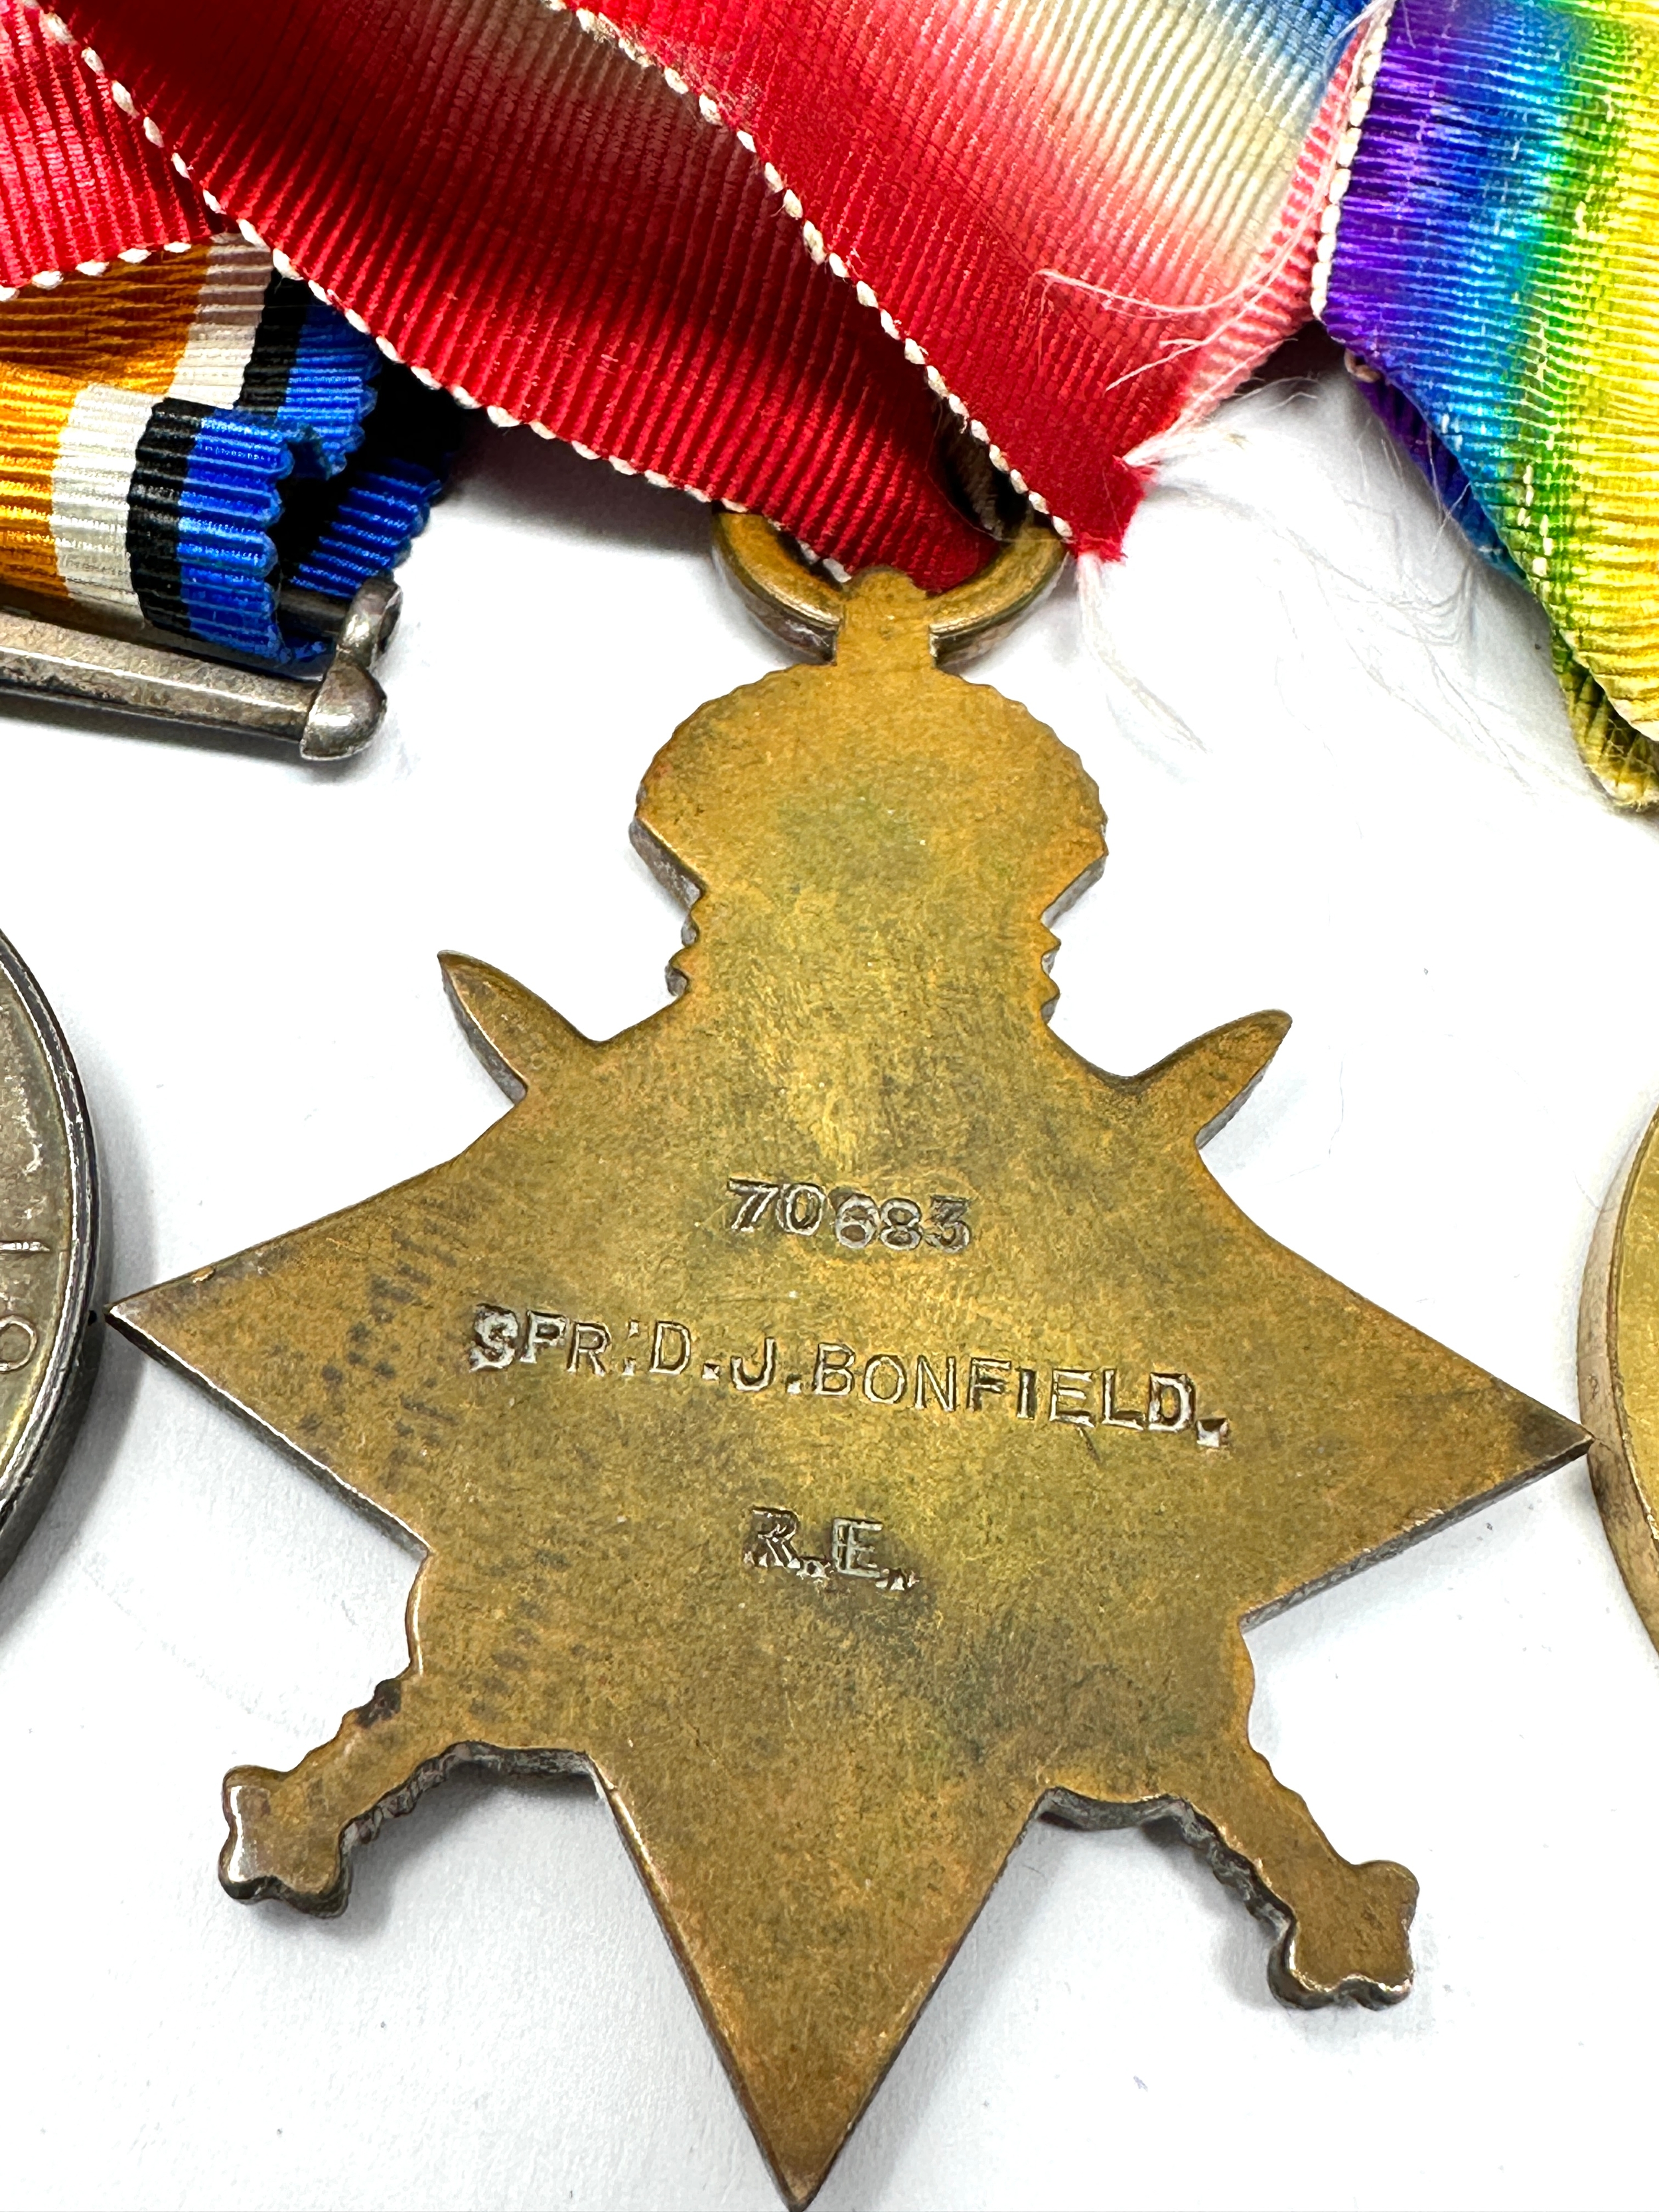 ww1 trio medals to 70683 spr d.j bonfield r.e - Bild 3 aus 3